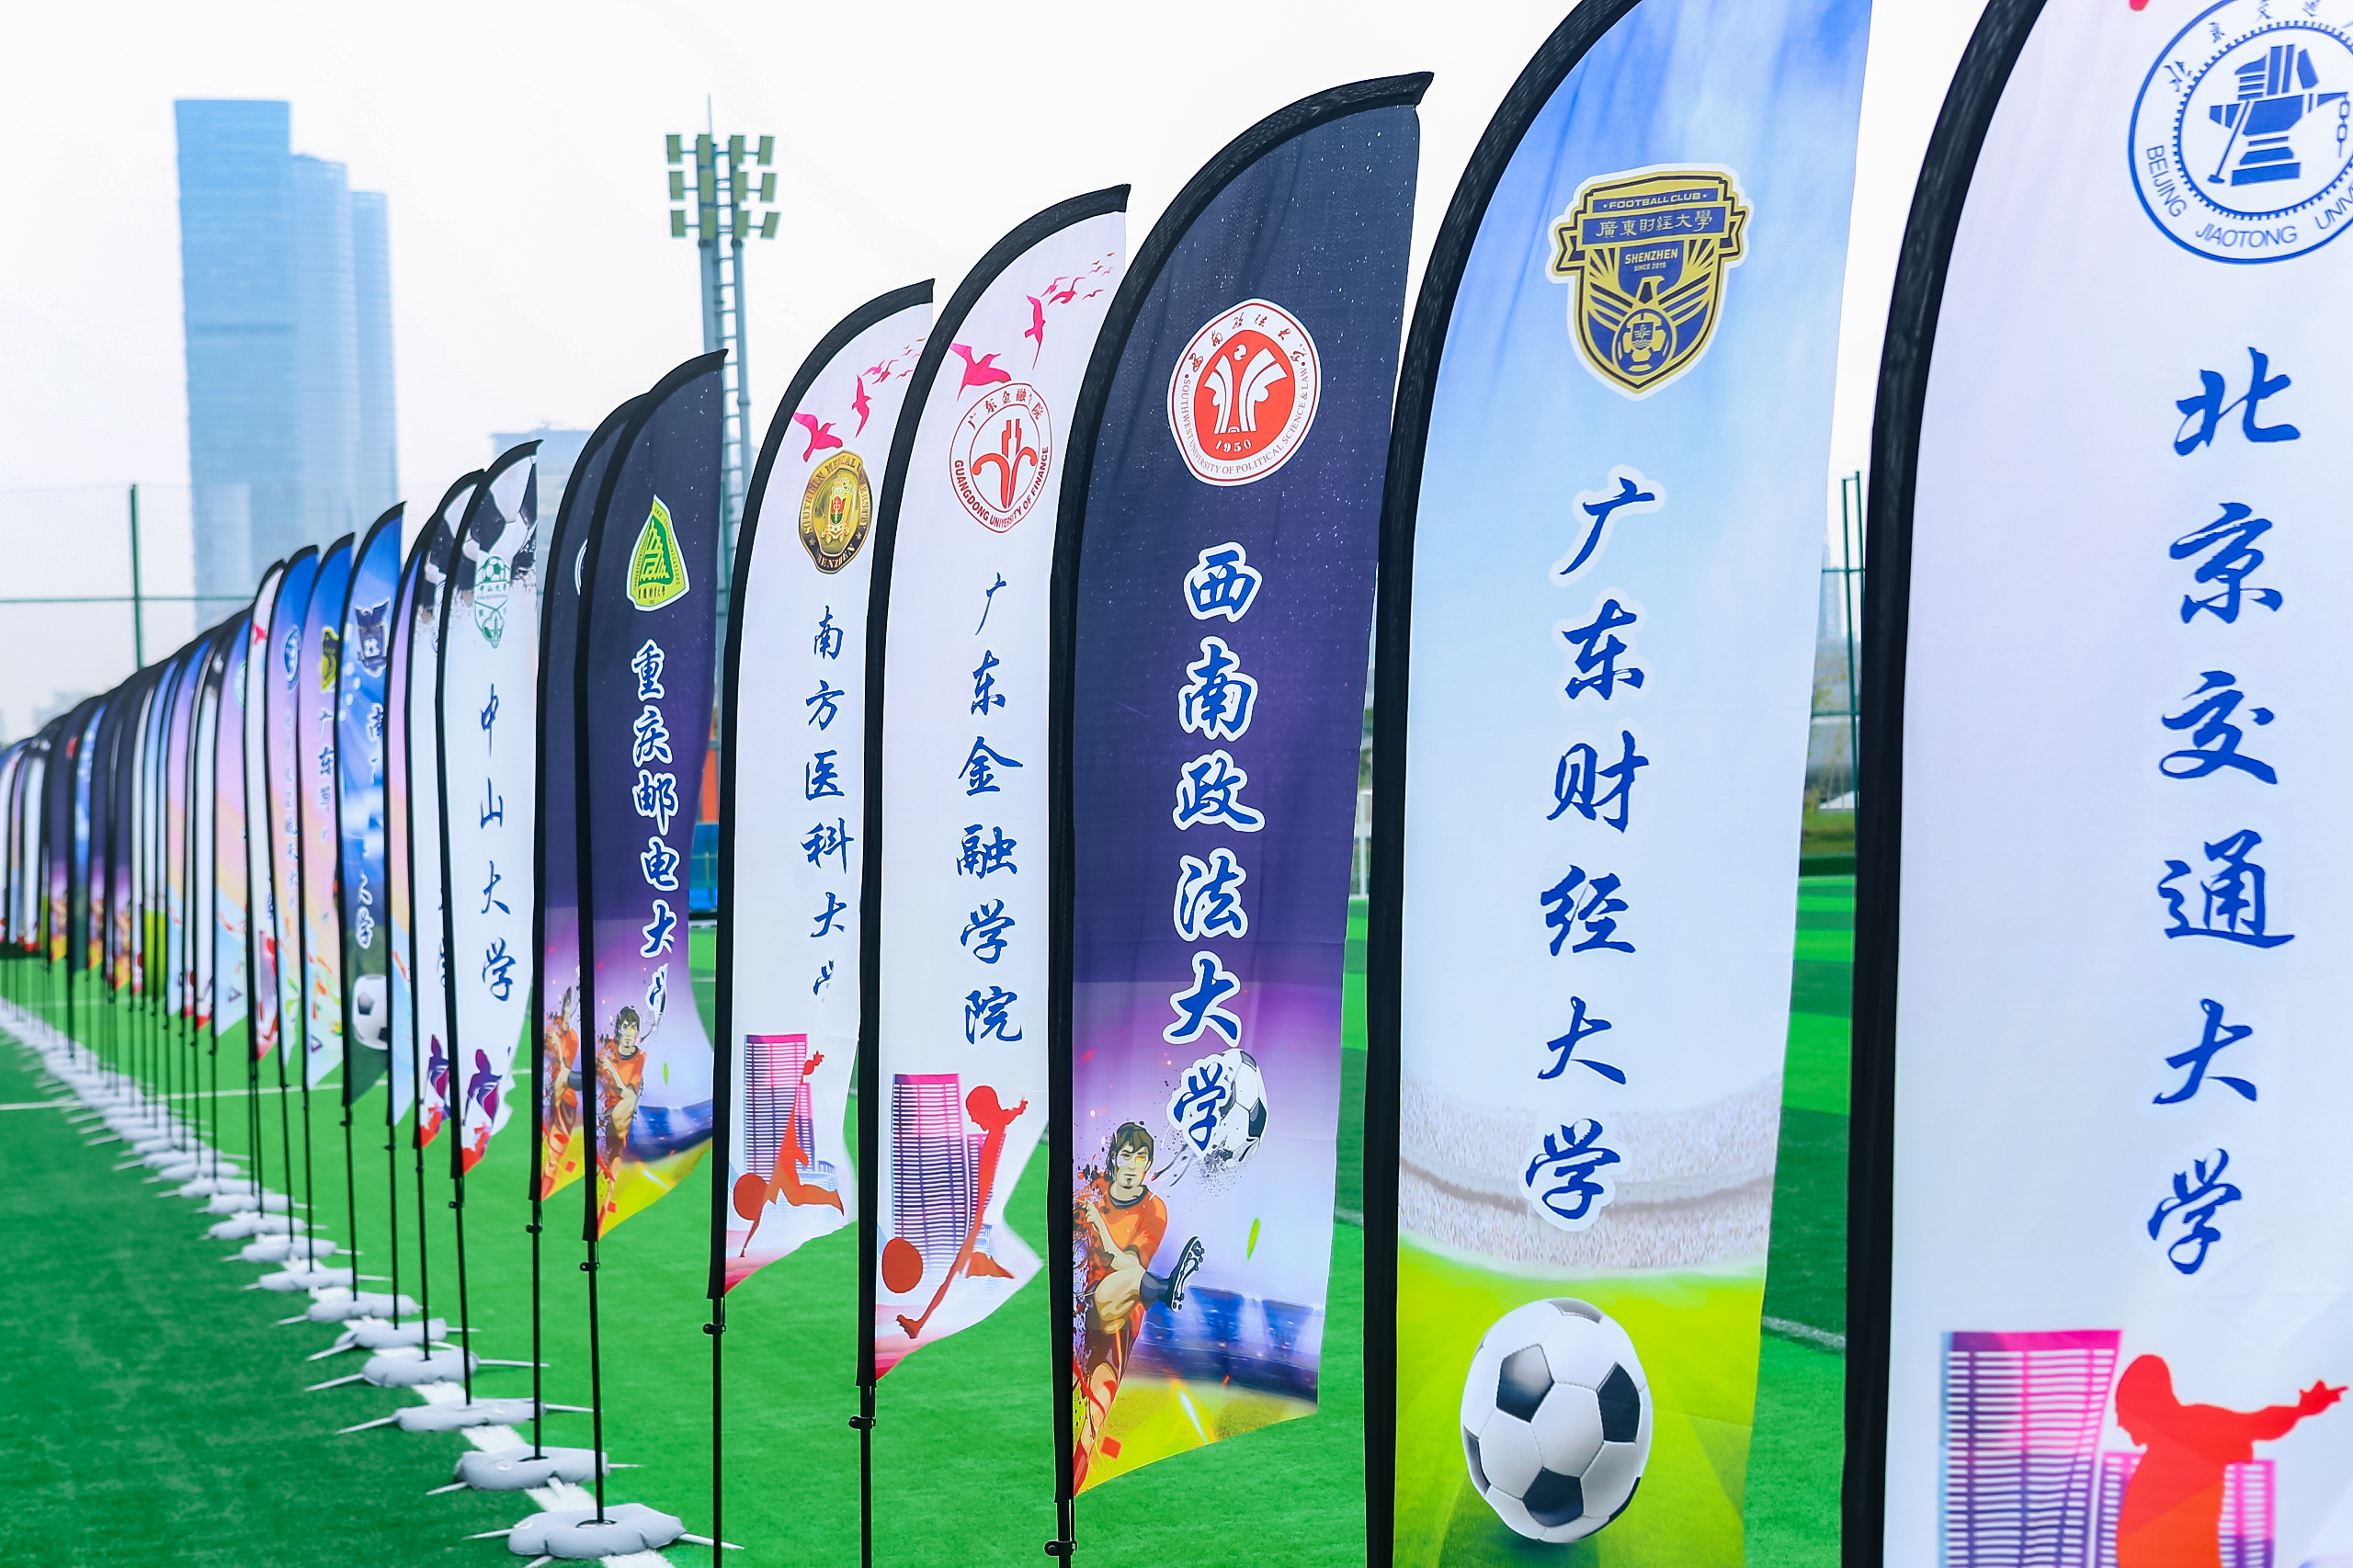 深圳市全国高校校友足球联赛打响 66支球队参加12月中旬决出冠军